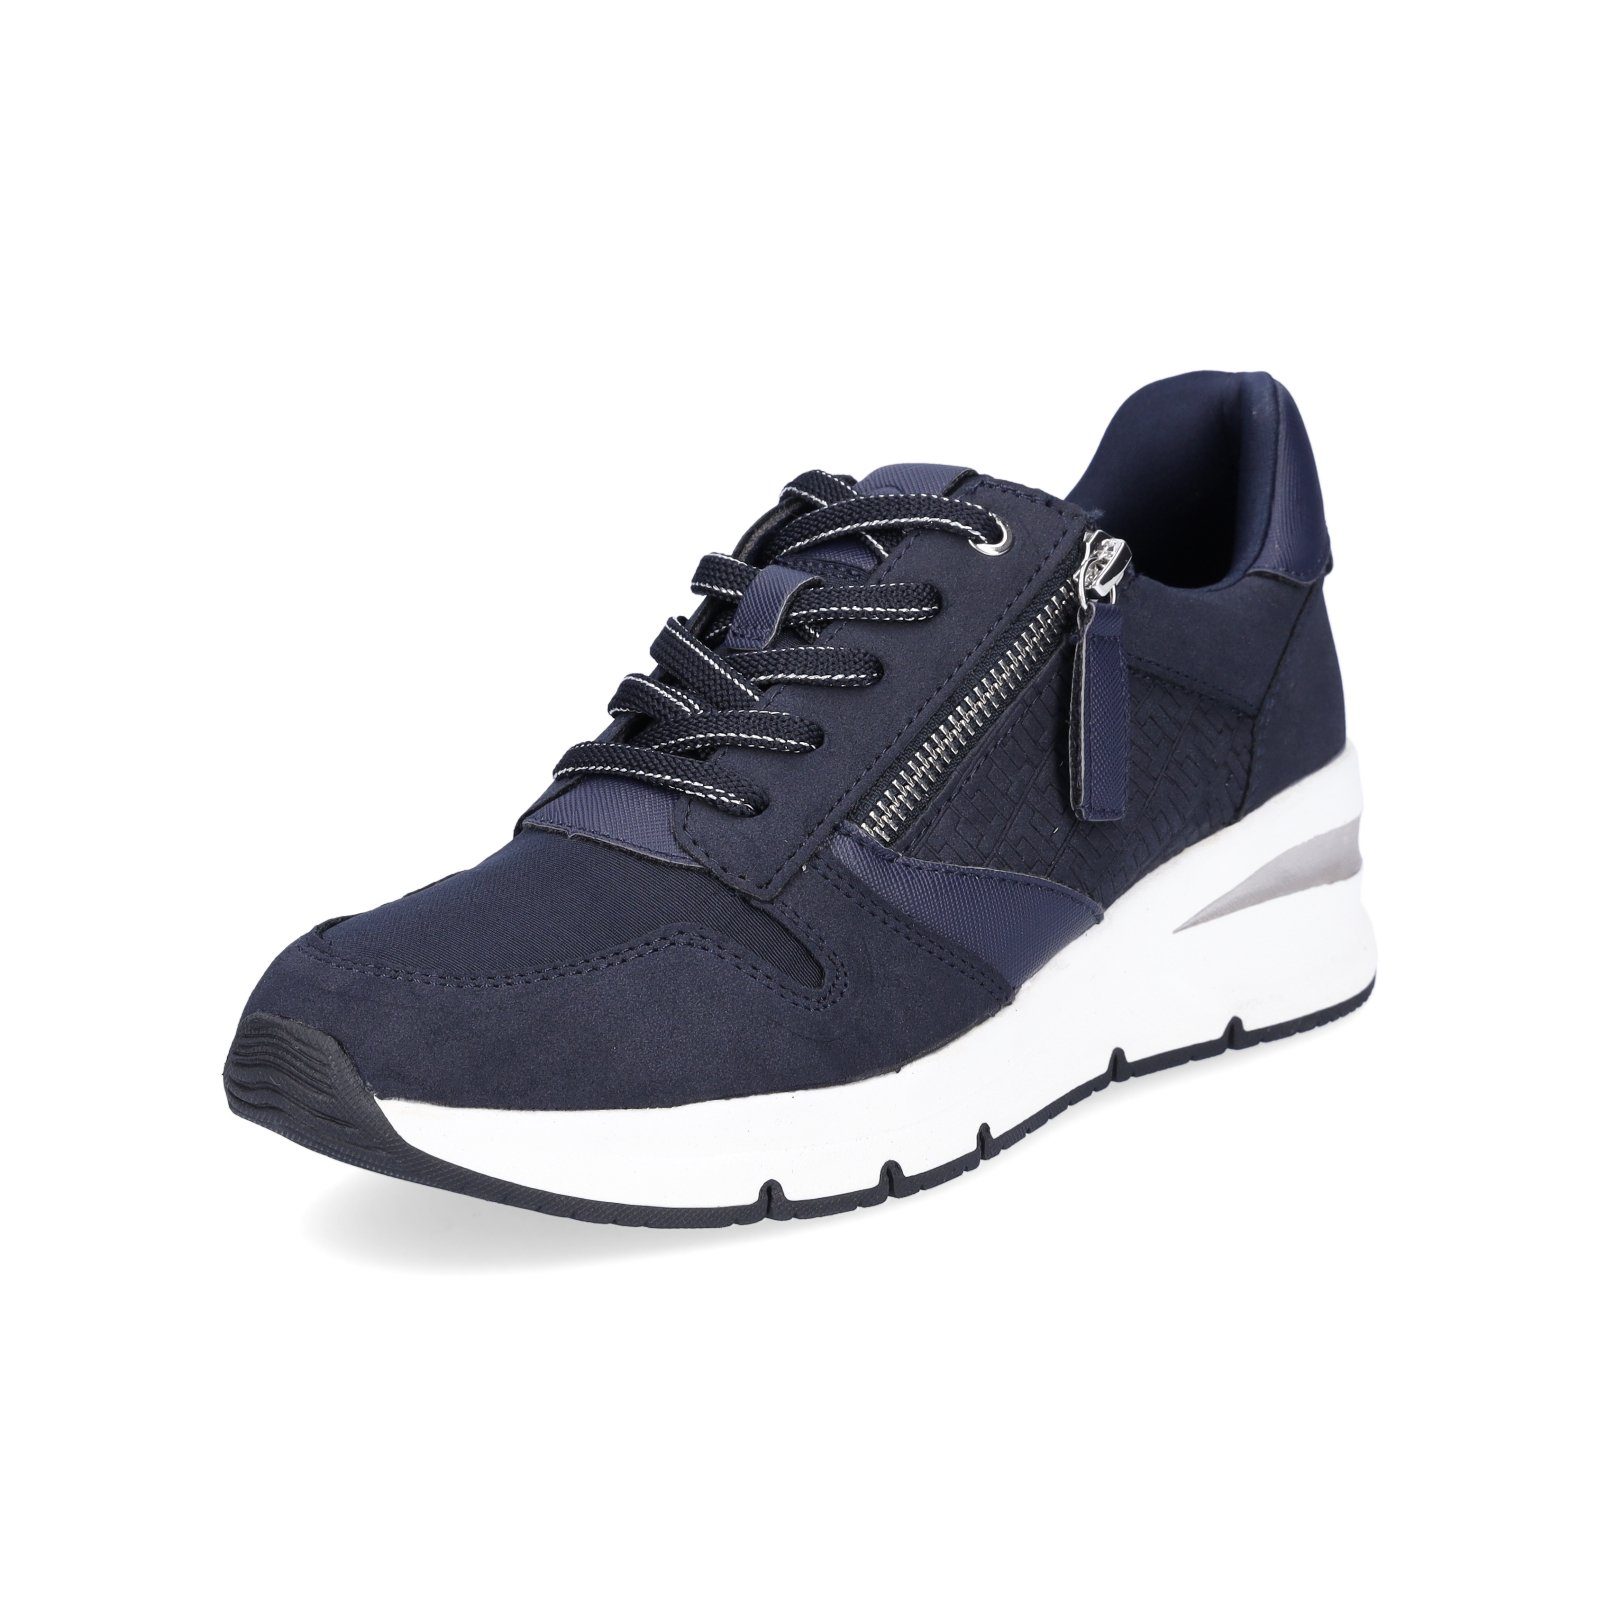 Blaue Tamaris Schuhe online kaufen | OTTO